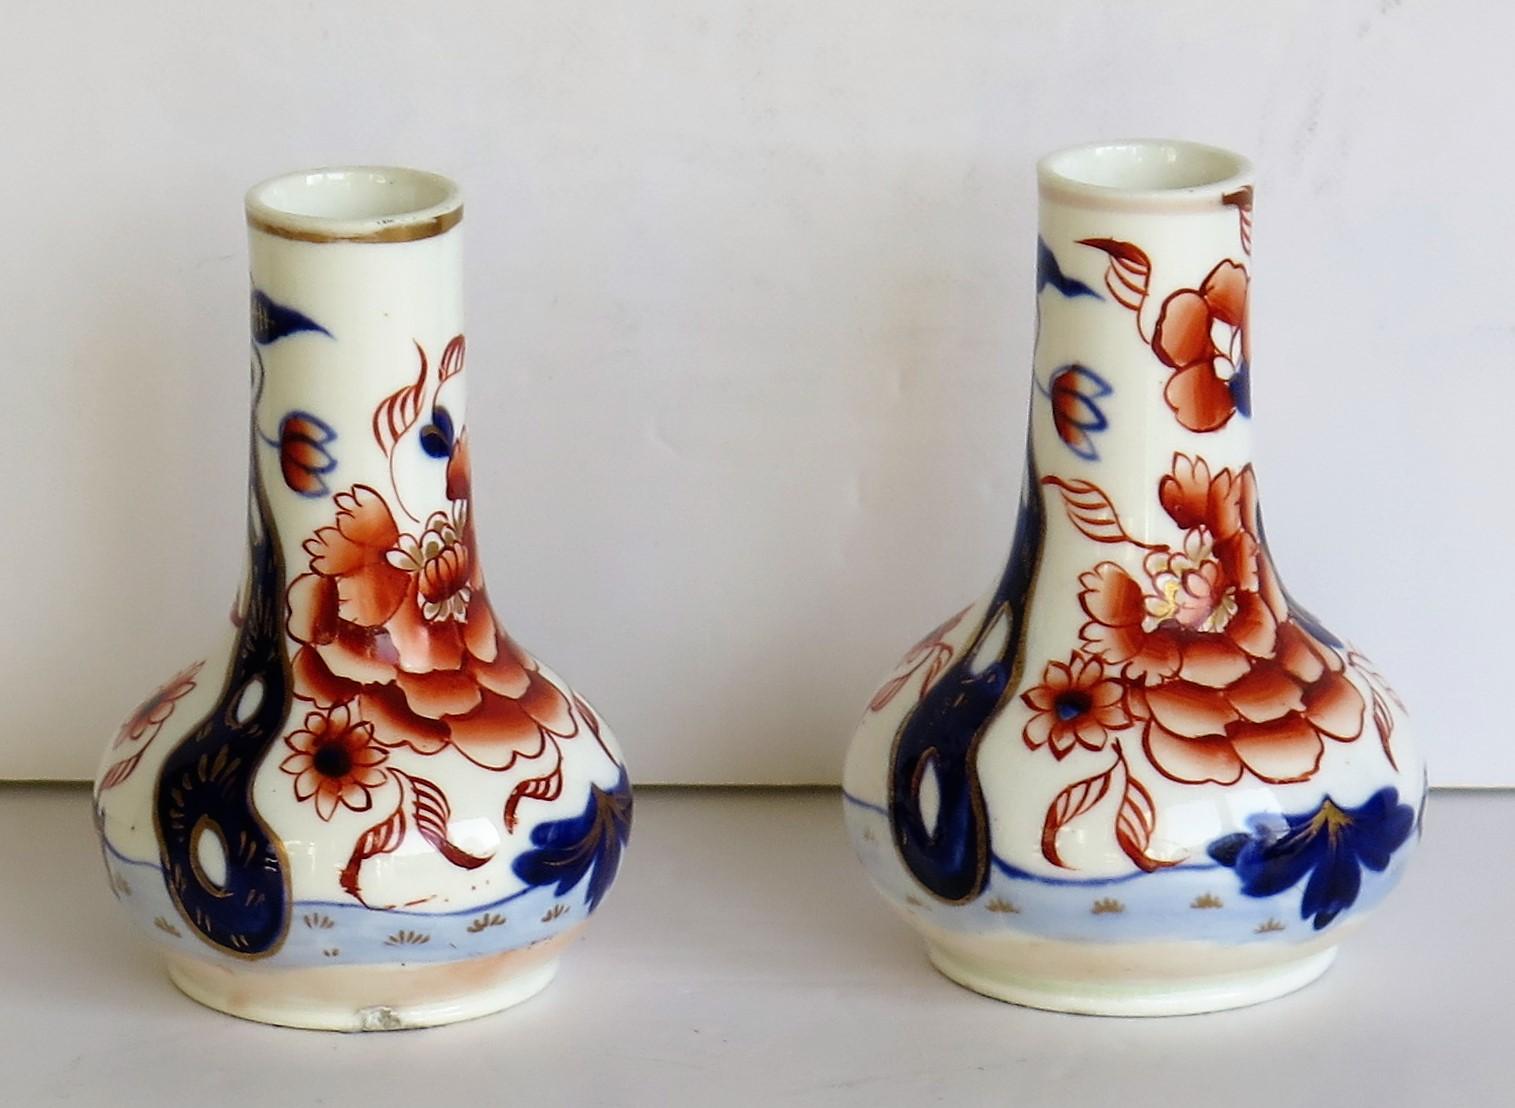 Es handelt sich um ein schönes Paar kleiner Vasen oder Parfümflaschen aus Porzellan von Mason's (C J Mason) aus Lane Delph, Staffordshire Potteries, England.

Sie sind handdekoriert im Fence Japan-Muster, einem bekannten Mason's-Muster, das auf